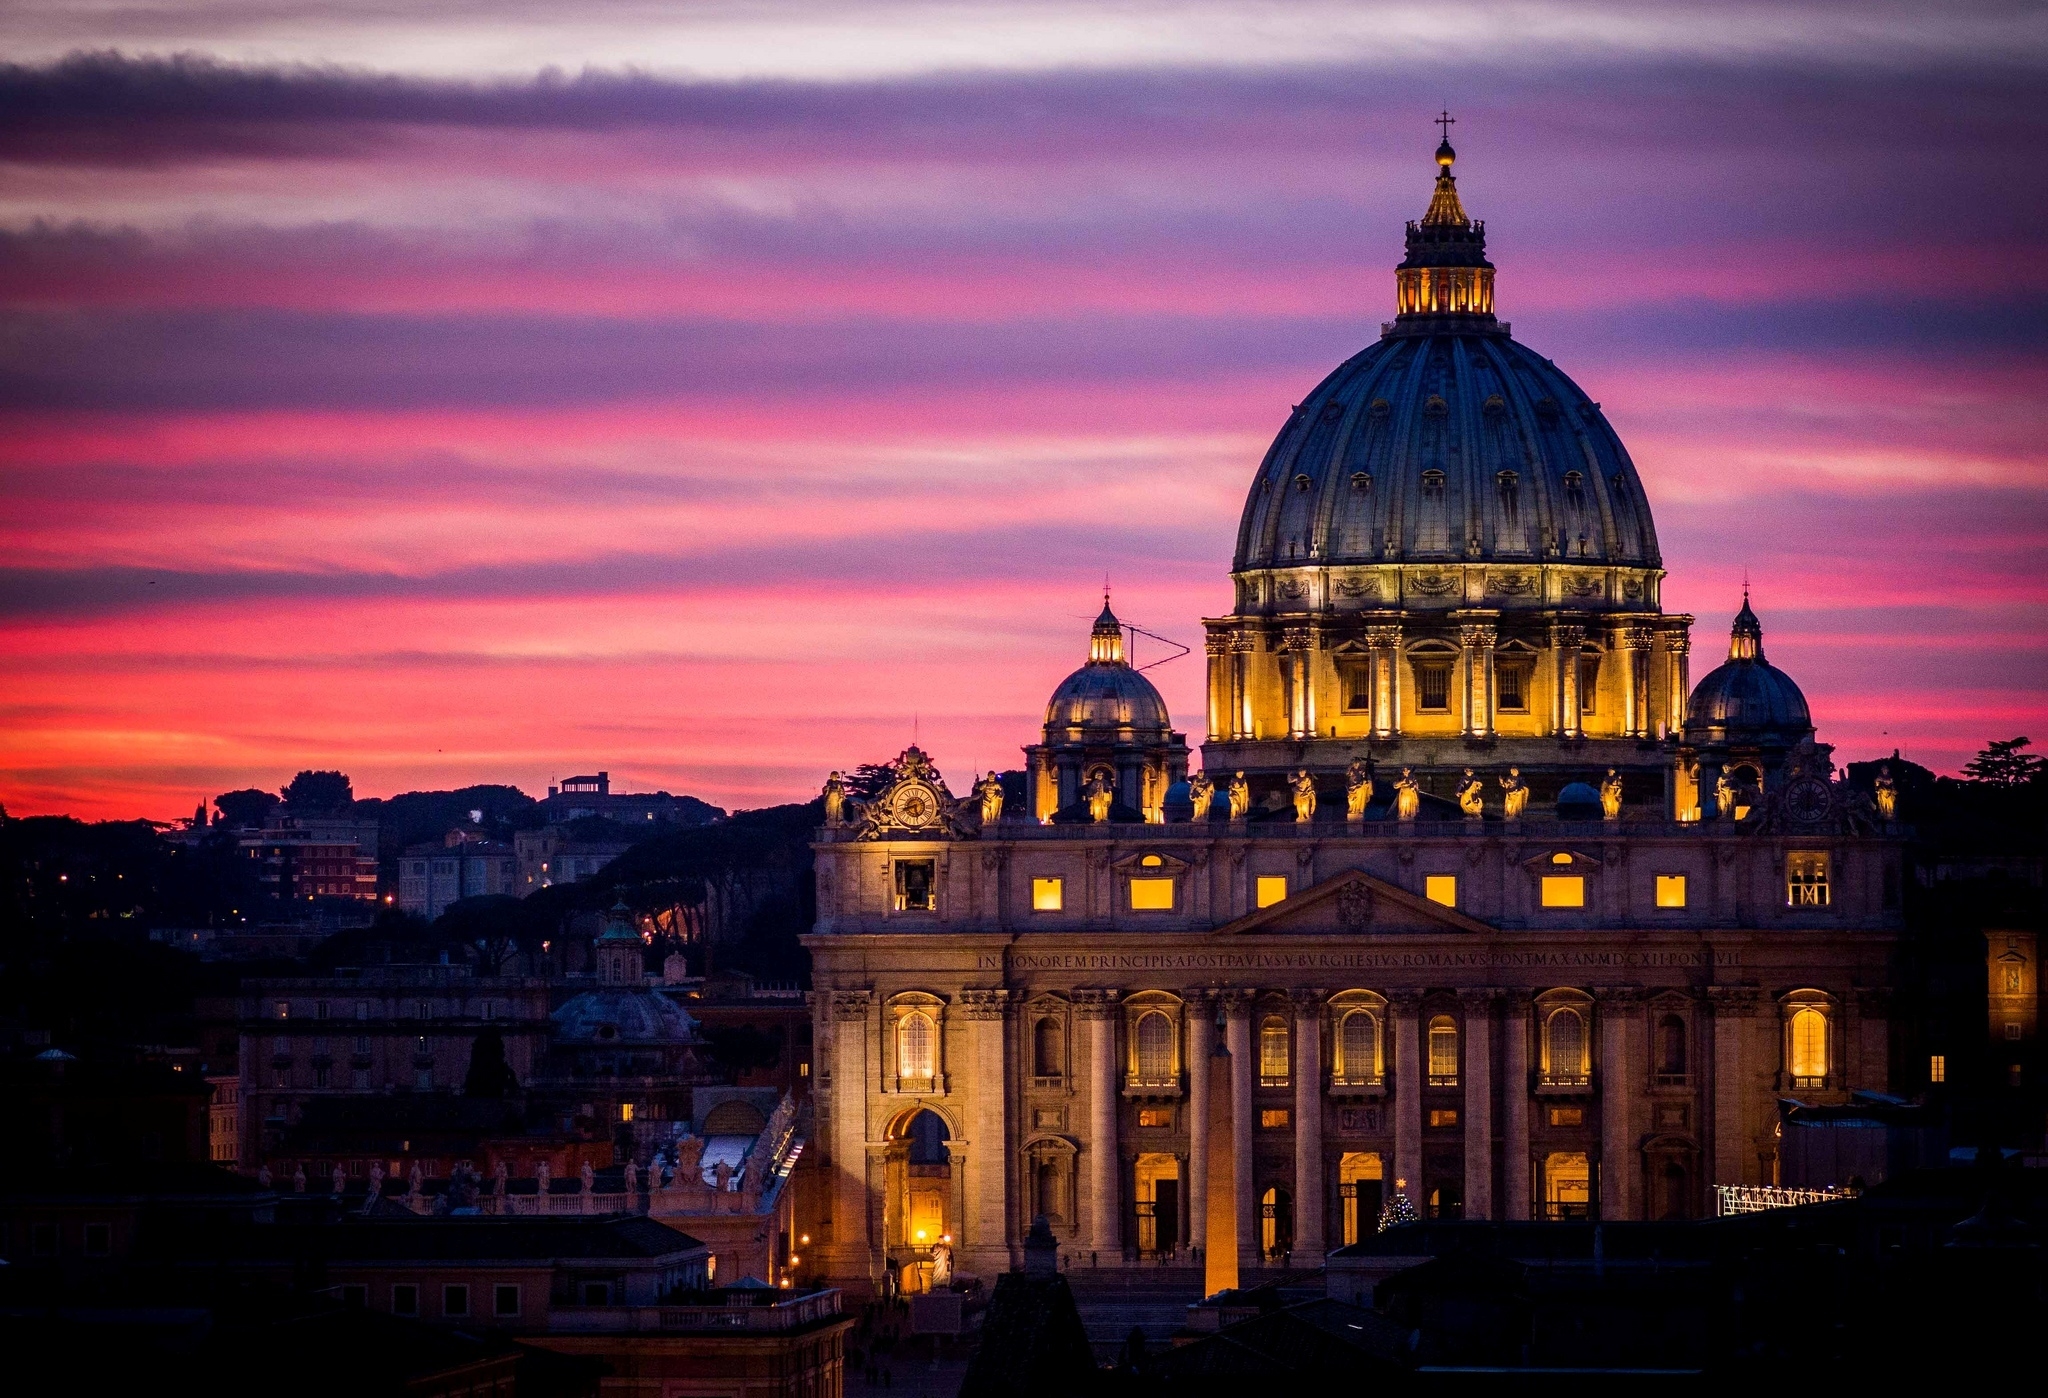 Скачать обои Ватикан на телефон бесплатно